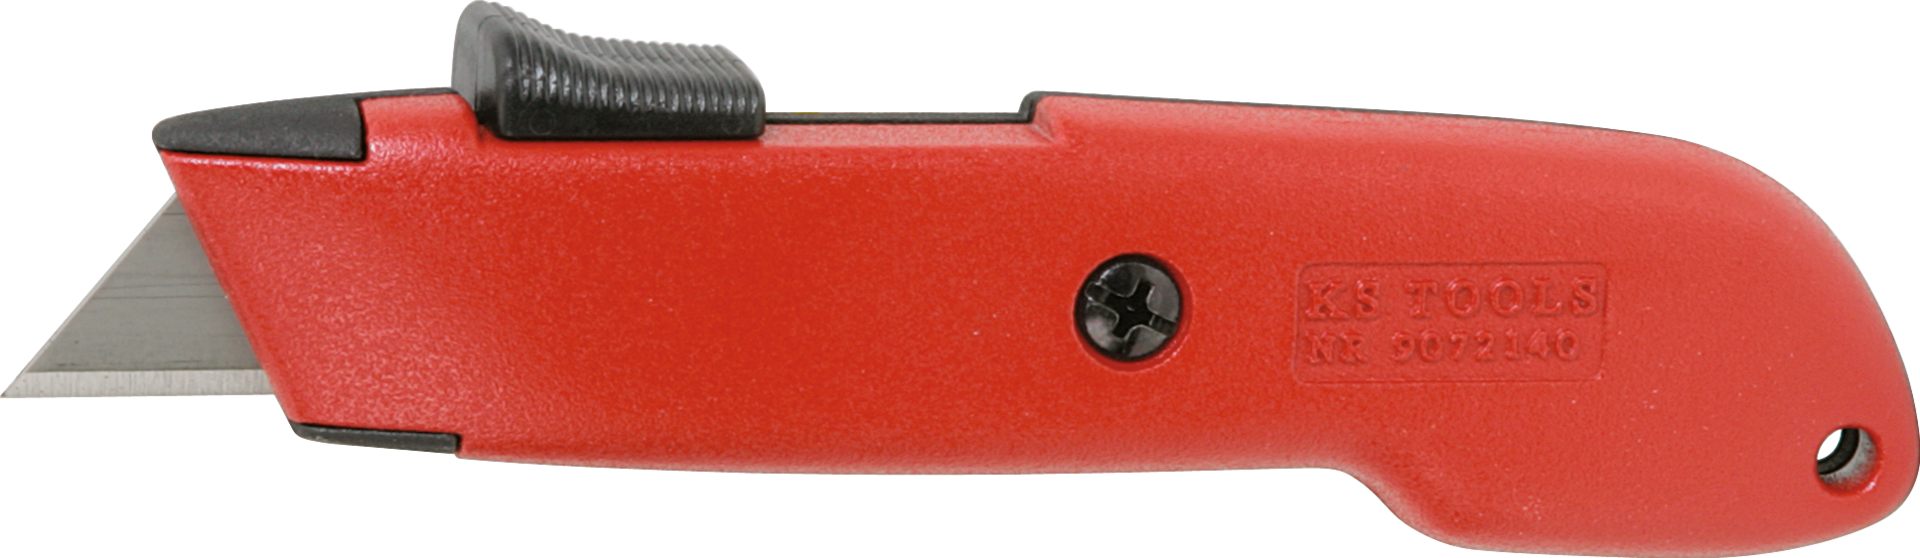 Cuttermesser Trapezklinge mit einziehbarer Klinge und automatischem Rückzug L150mm